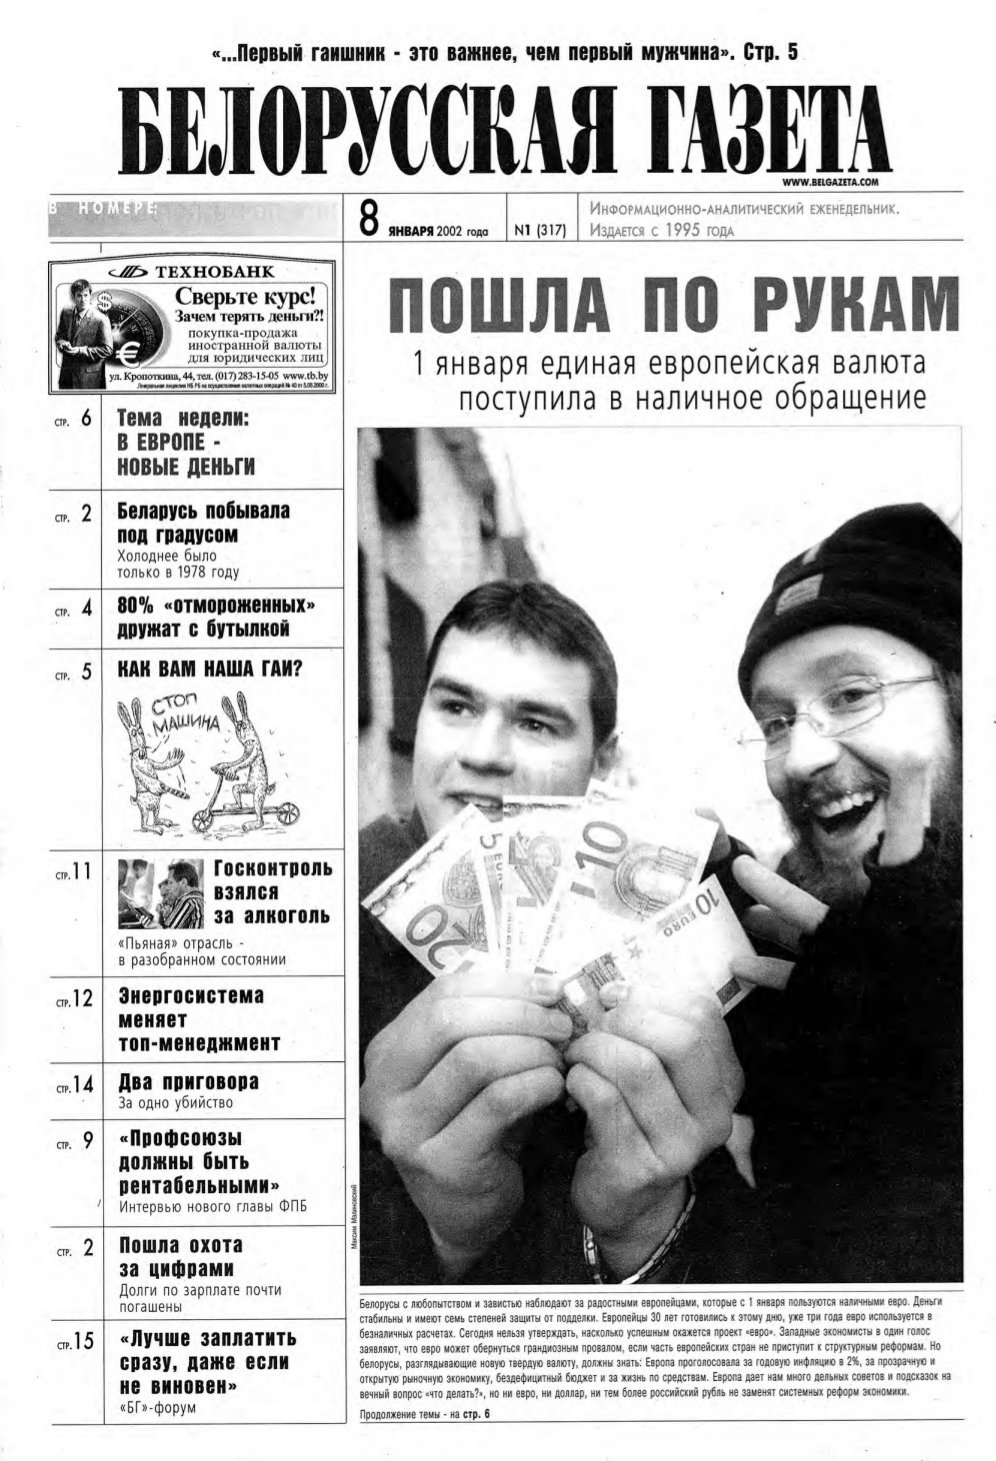 Белорусская Газета 01 (317) 2002